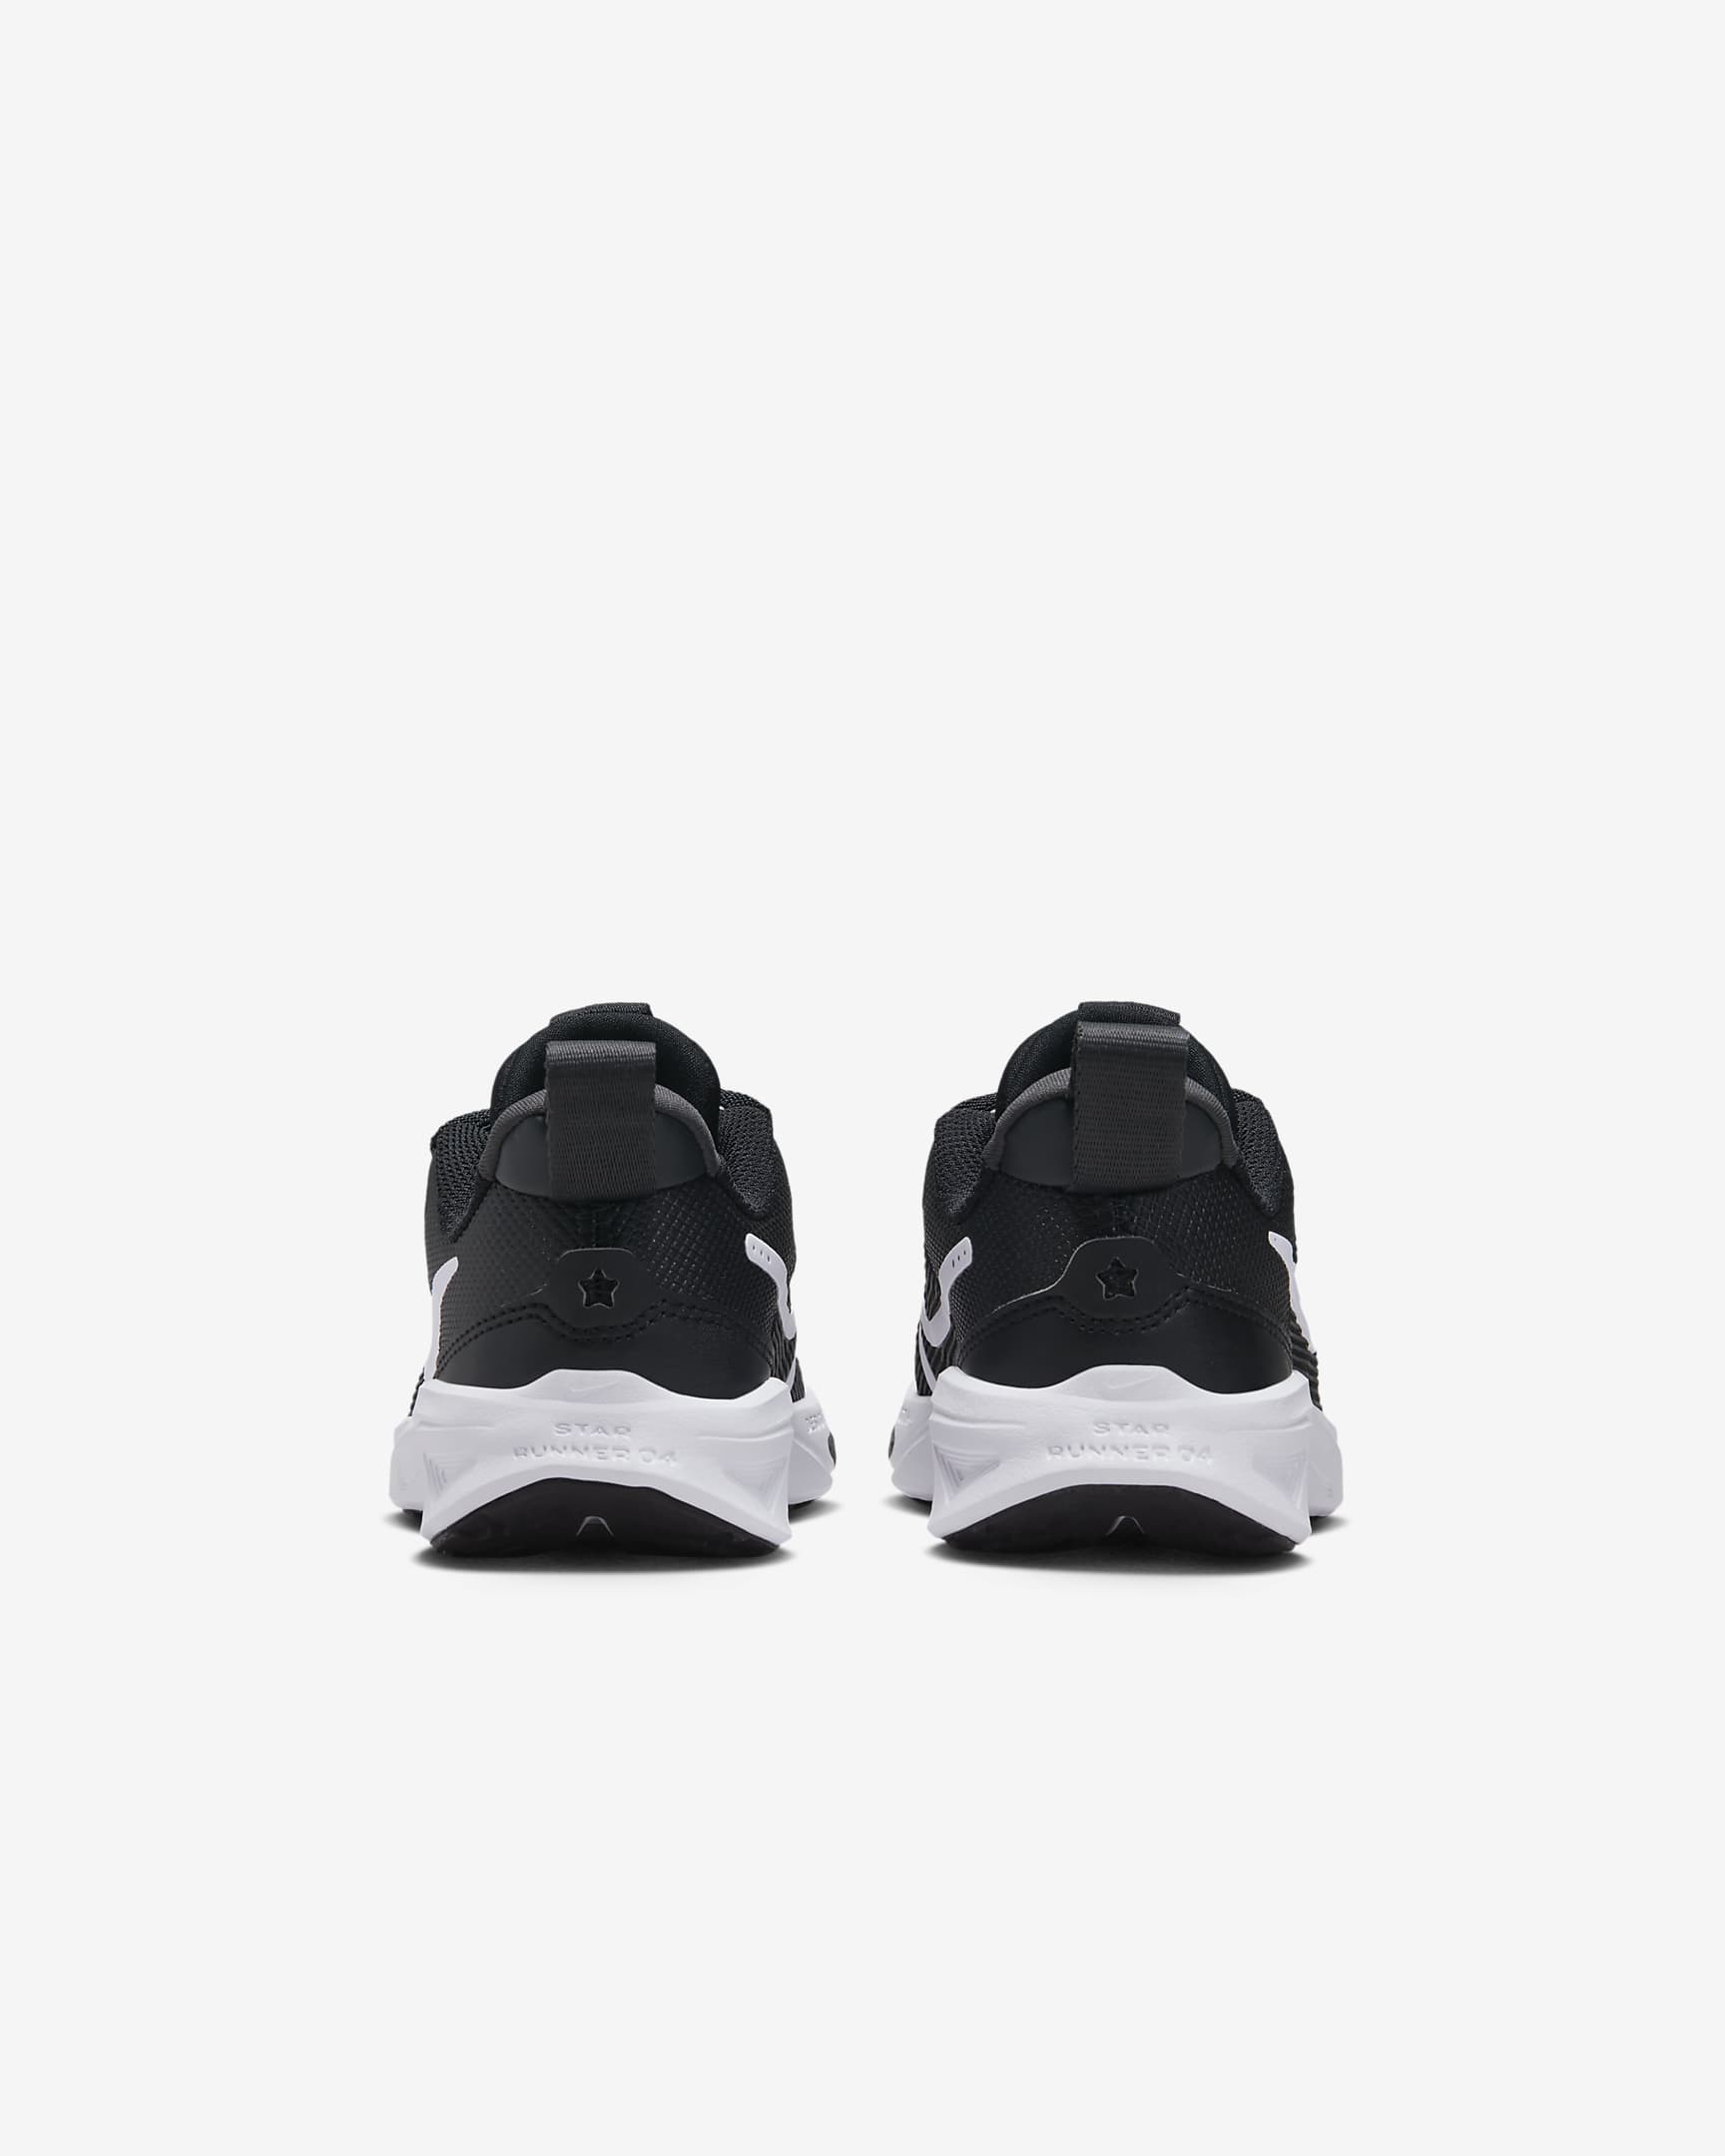 Nike Star Runner 4 Schuh für jüngere Kinder - Schwarz/Anthracite/Weiß